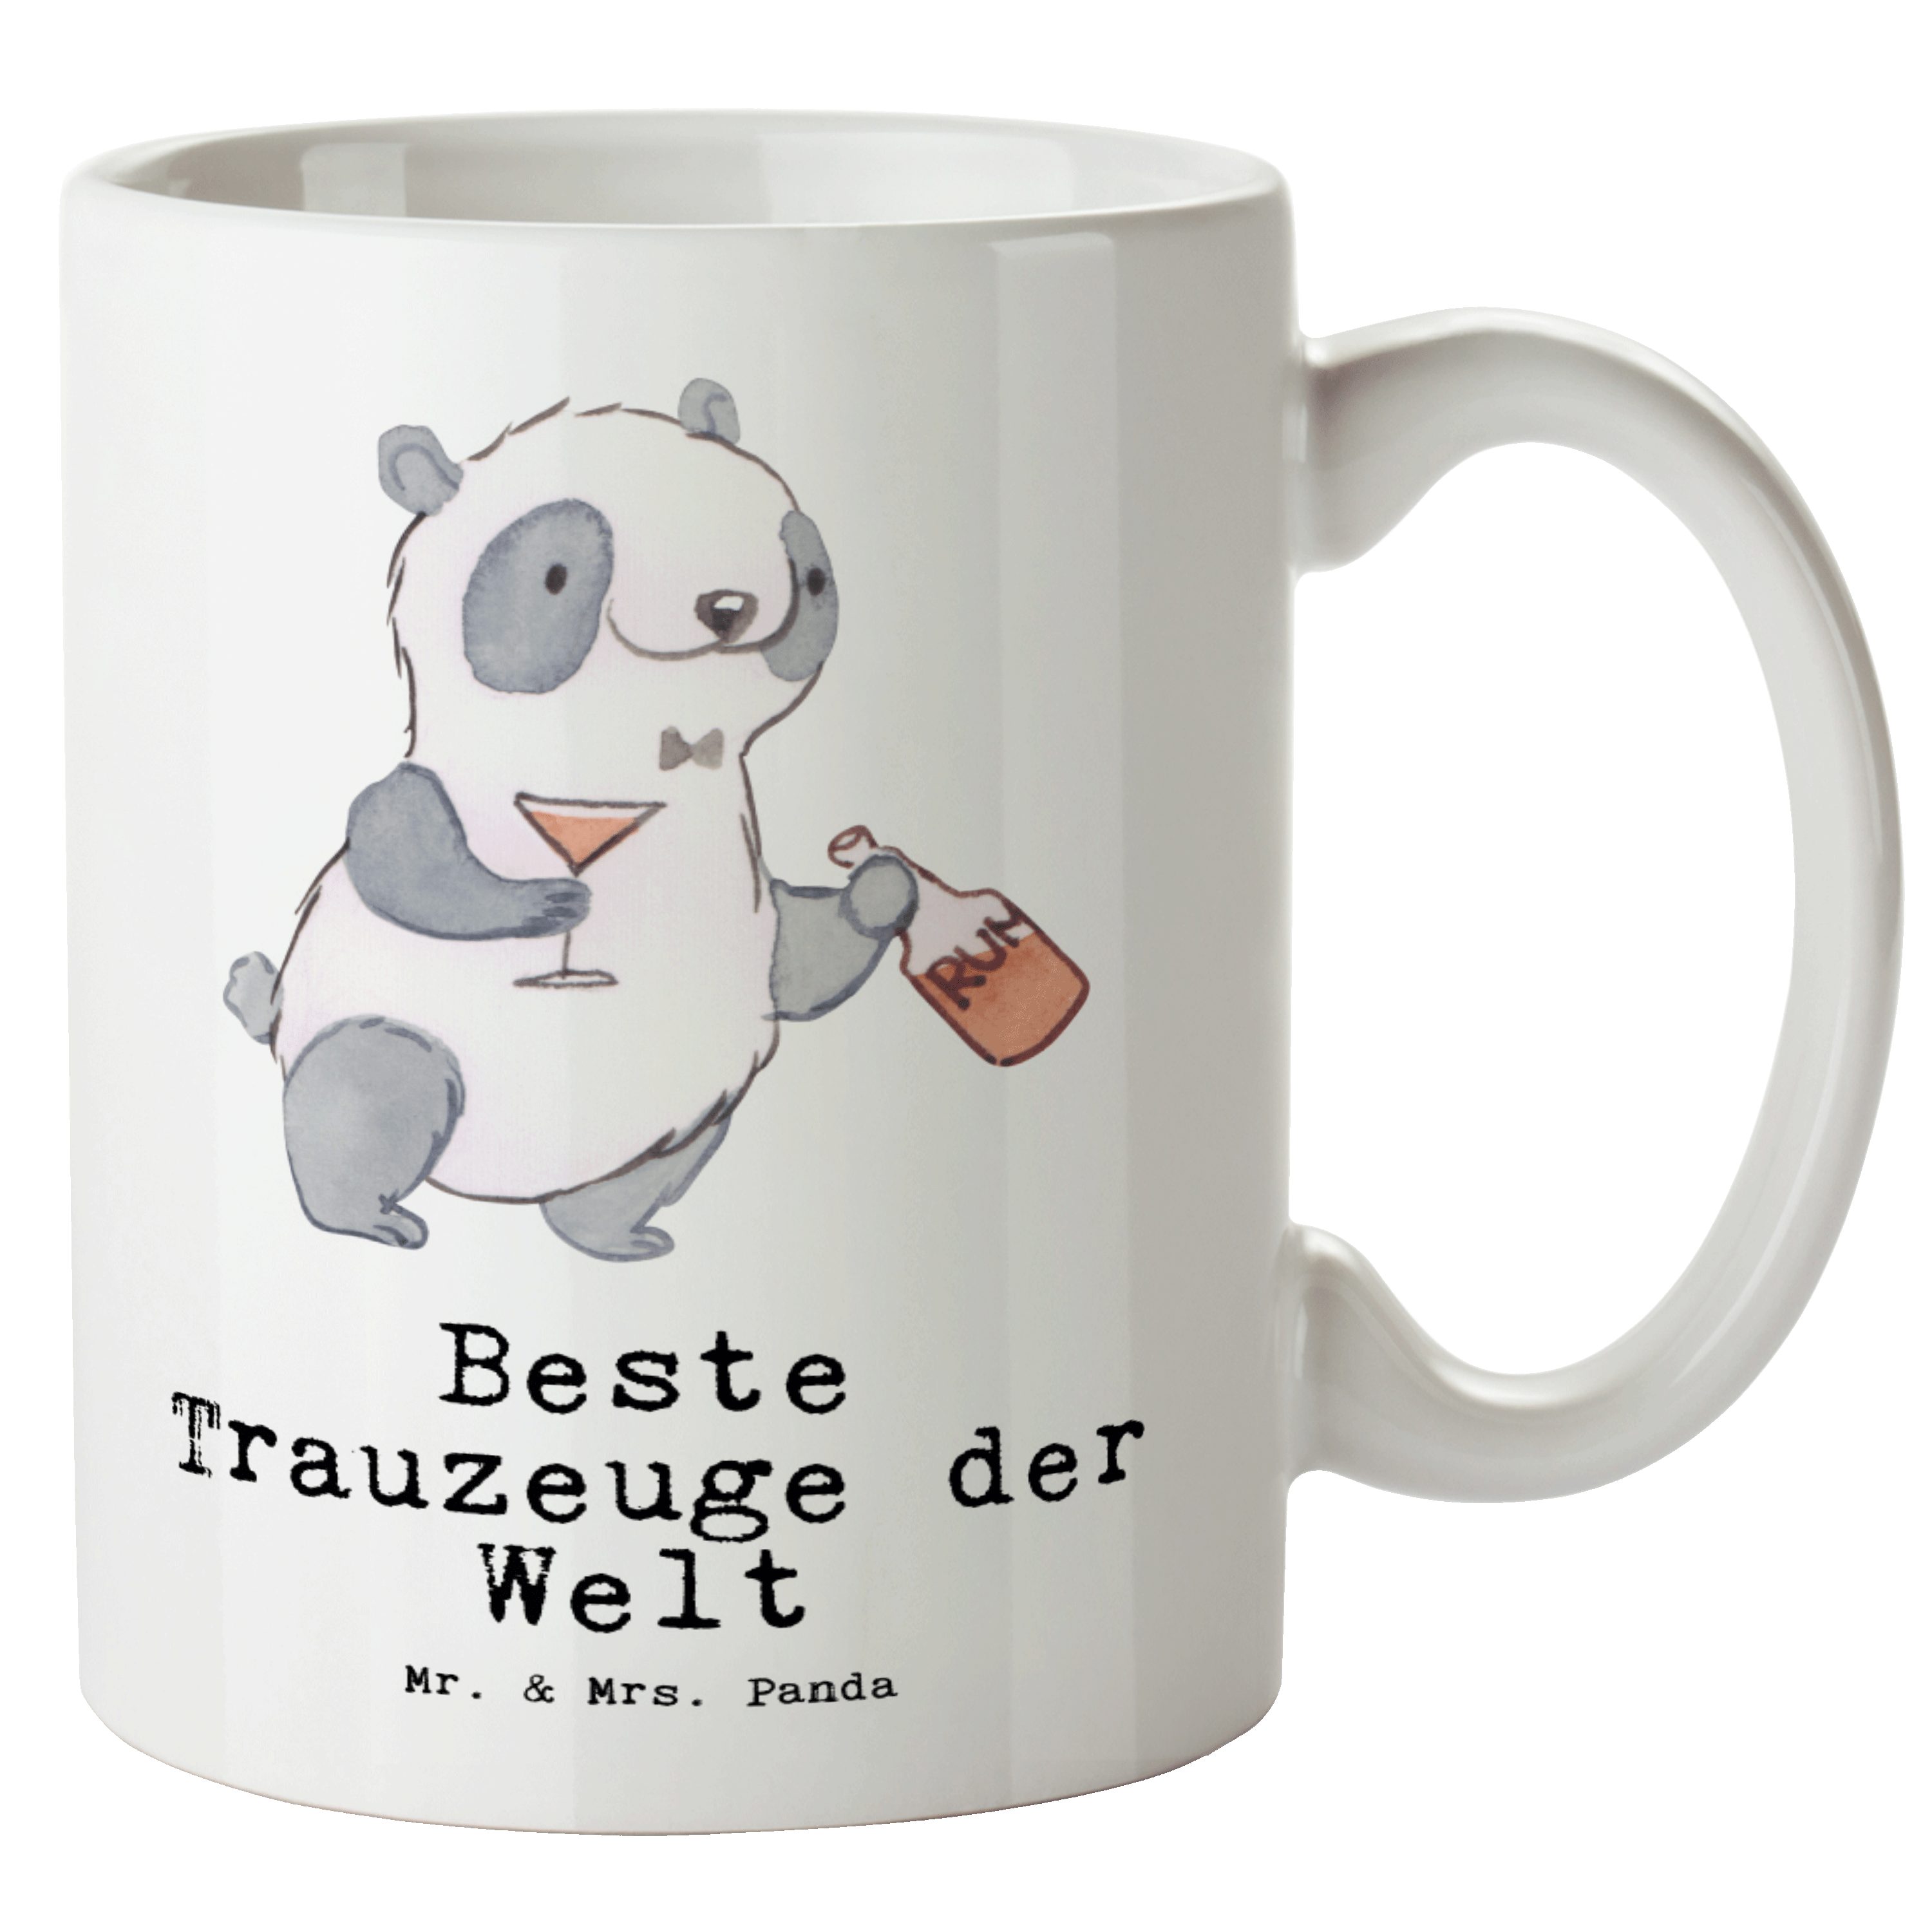 Mr. & Panda Geschenk, Tasse Teetasse, der Tasse - Welt Weiß Mrs. XL Stand, Bester Keramik - Trauzeuge Panda XL